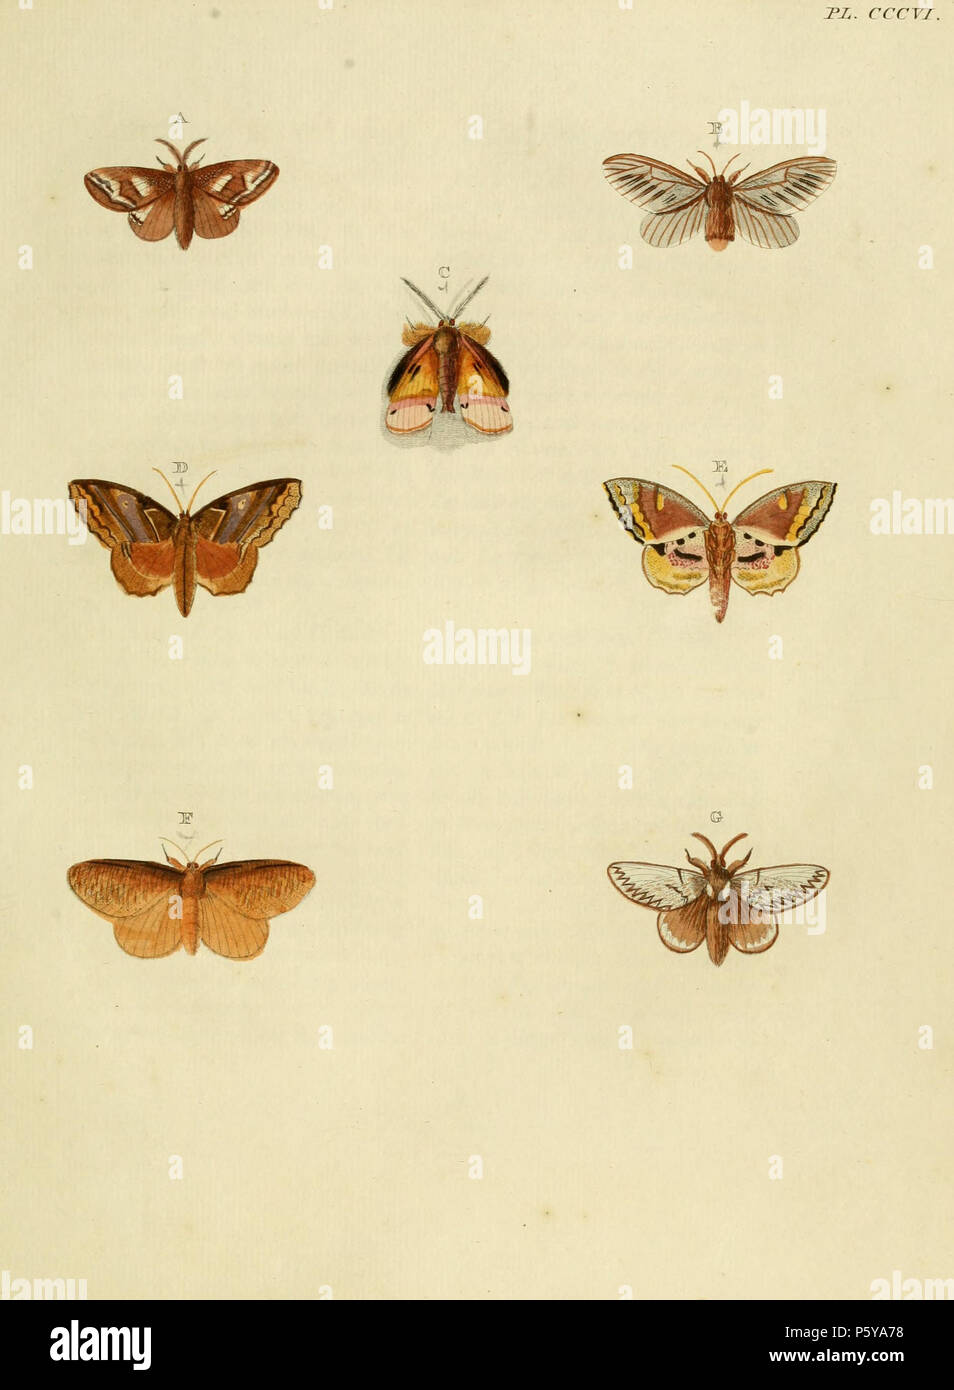 N/A. Piastra CCCVI Avvertimento: alcuni taxa/nomi potrebbero essere errati/eluse o collocato in un diverso genere. A: '(Phalaena) Agresta' ( = Euglyphis agresta (Stoll, [1780]), iconotype, vedere Funet). B: "(Phalaena) nuda" ( = Megalopyge nuda (Cramer, 1780) iconotype, vedere Global Lepidoptera indice dei nomi. NHM). C: '(Phalaena) Amynta' (=Ceroctena amynta (Cramer, 1779) (maschio), vedere il Global Lepidoptera indice dei nomi, NHM e Funet). Foto di enciclopedia della vita. Femmina su pl. 251 E. D, E: '(Phalaena) Verago' ( = Zanola verago (Cramer, [1777]), vedere Funet). Foto al codice a barre della vita. Maschio su pl. 16 Foto Stock